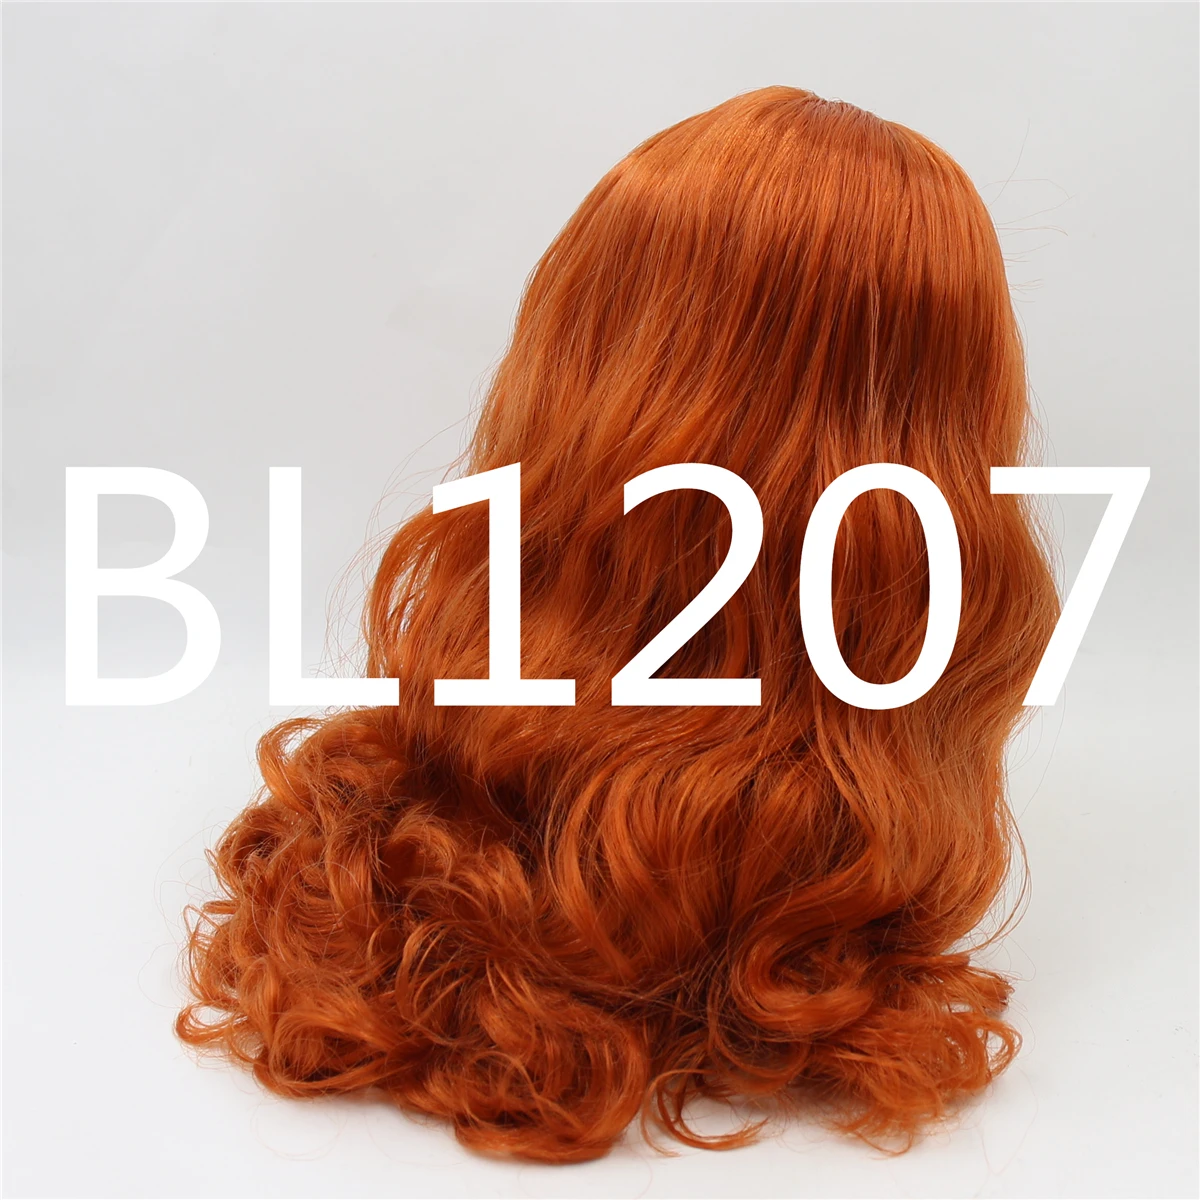 Neo Blythe Cabelo ruivo de boneca com cúpula de couro cabeludo Takara RBL 1